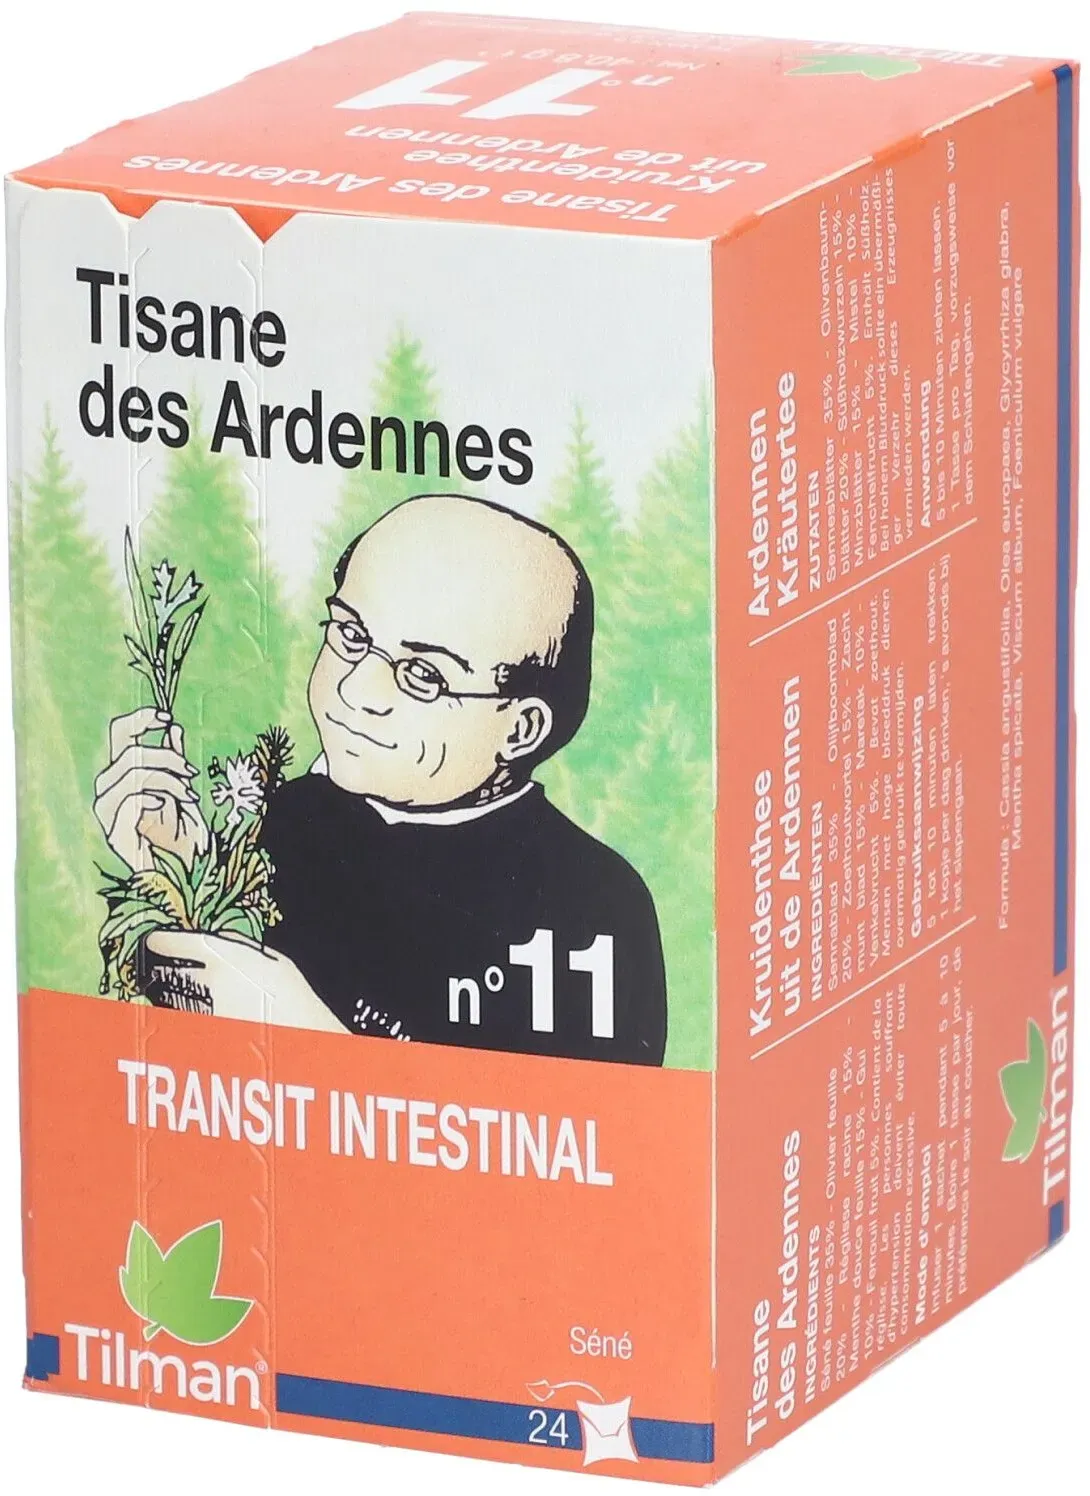 Tilman Tisane des Ardennes N°11 Transit Intestinal 24 pc(s) thé instantané